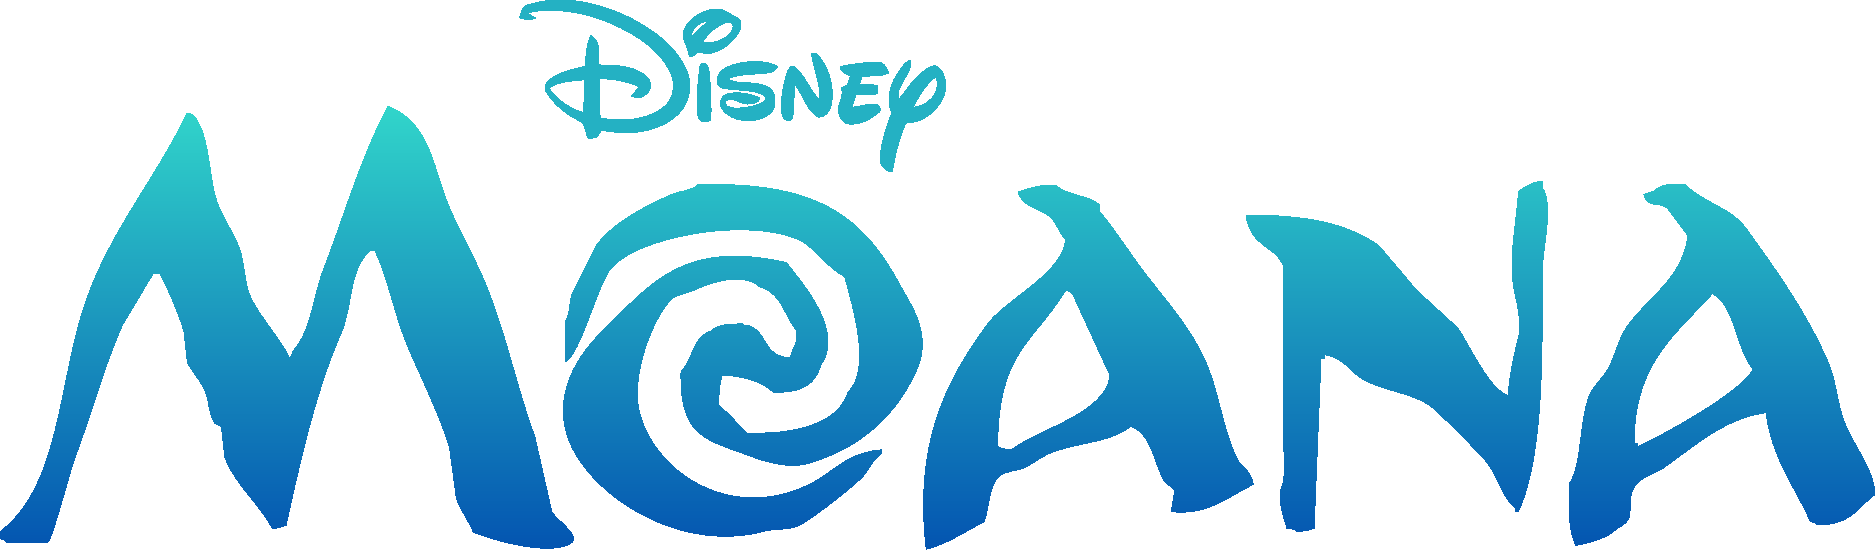 Disney Moana Logo Vector